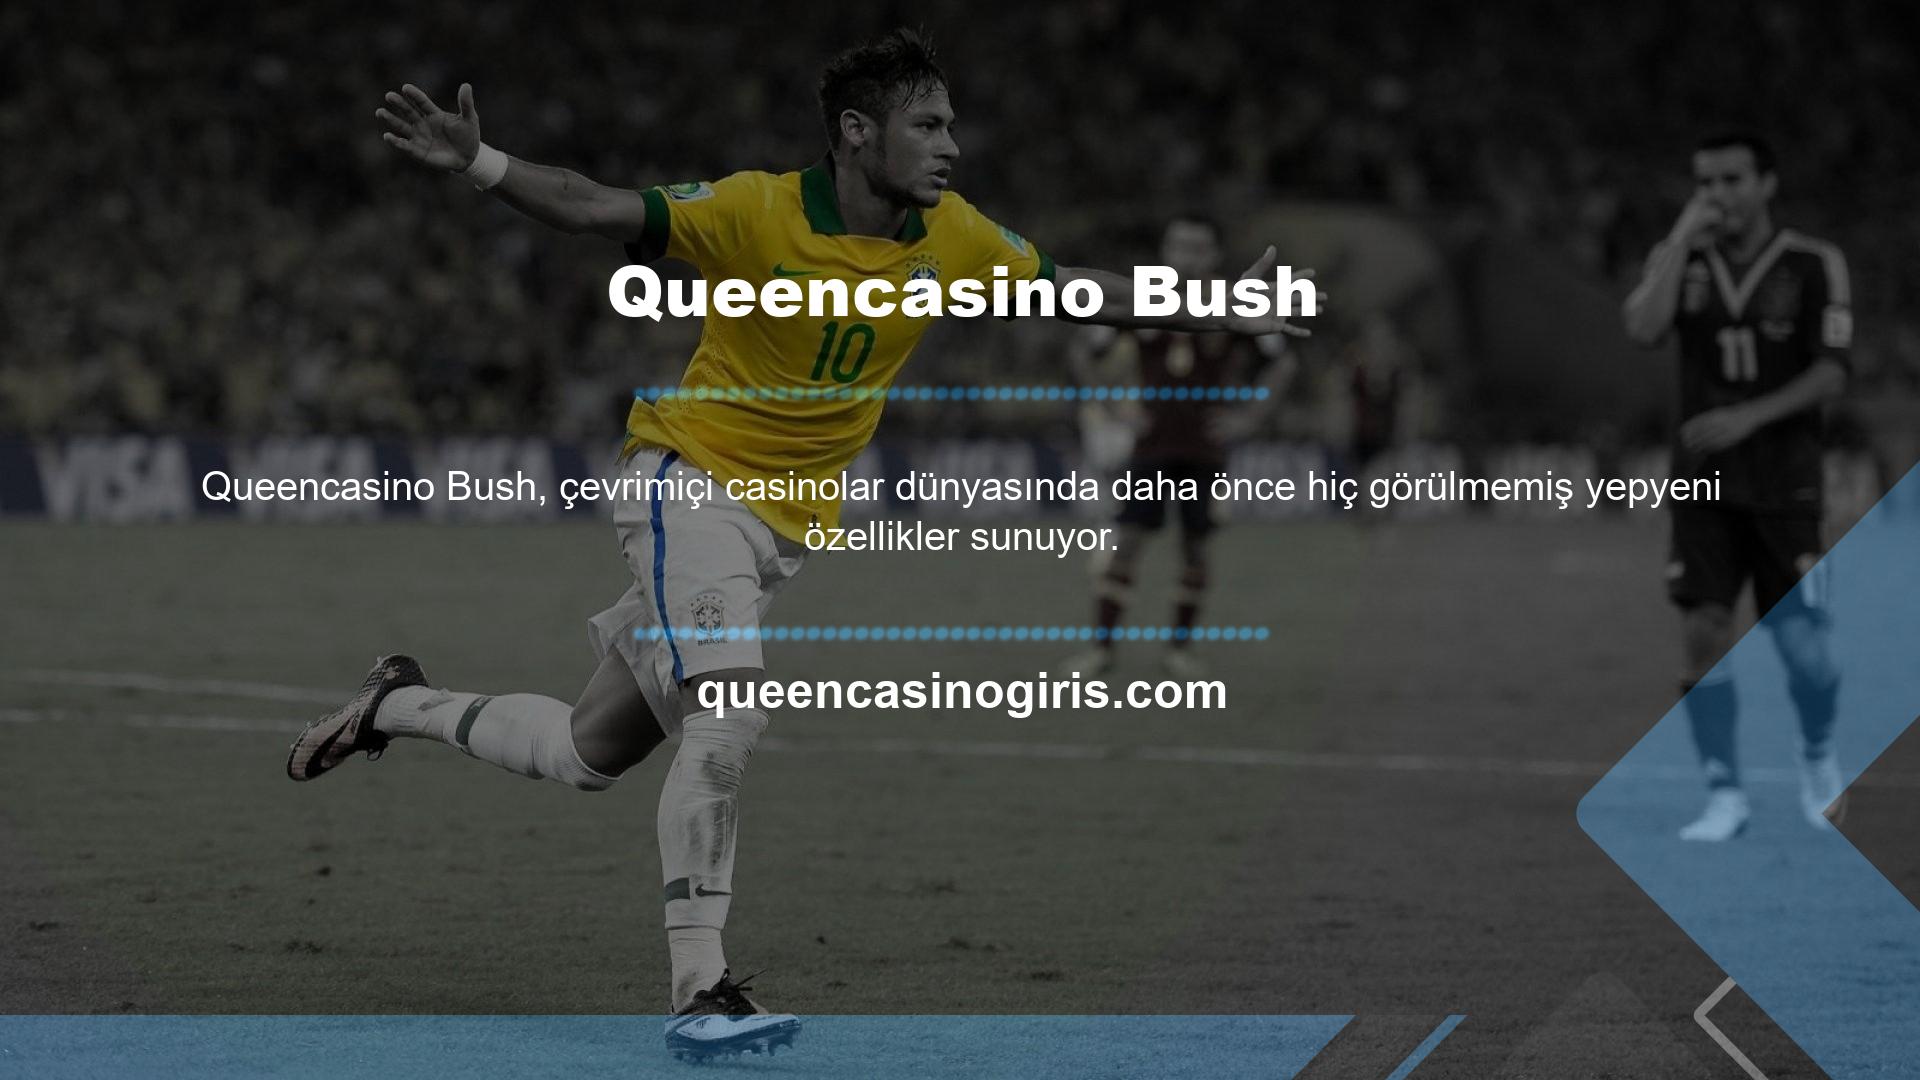 Queencasino online web sitesi, canlı spor bahisleri sektöründe lider konumunu sürdürmekte ve kullanıcılara eksiksiz bir mobil deneyim sunmaktadır